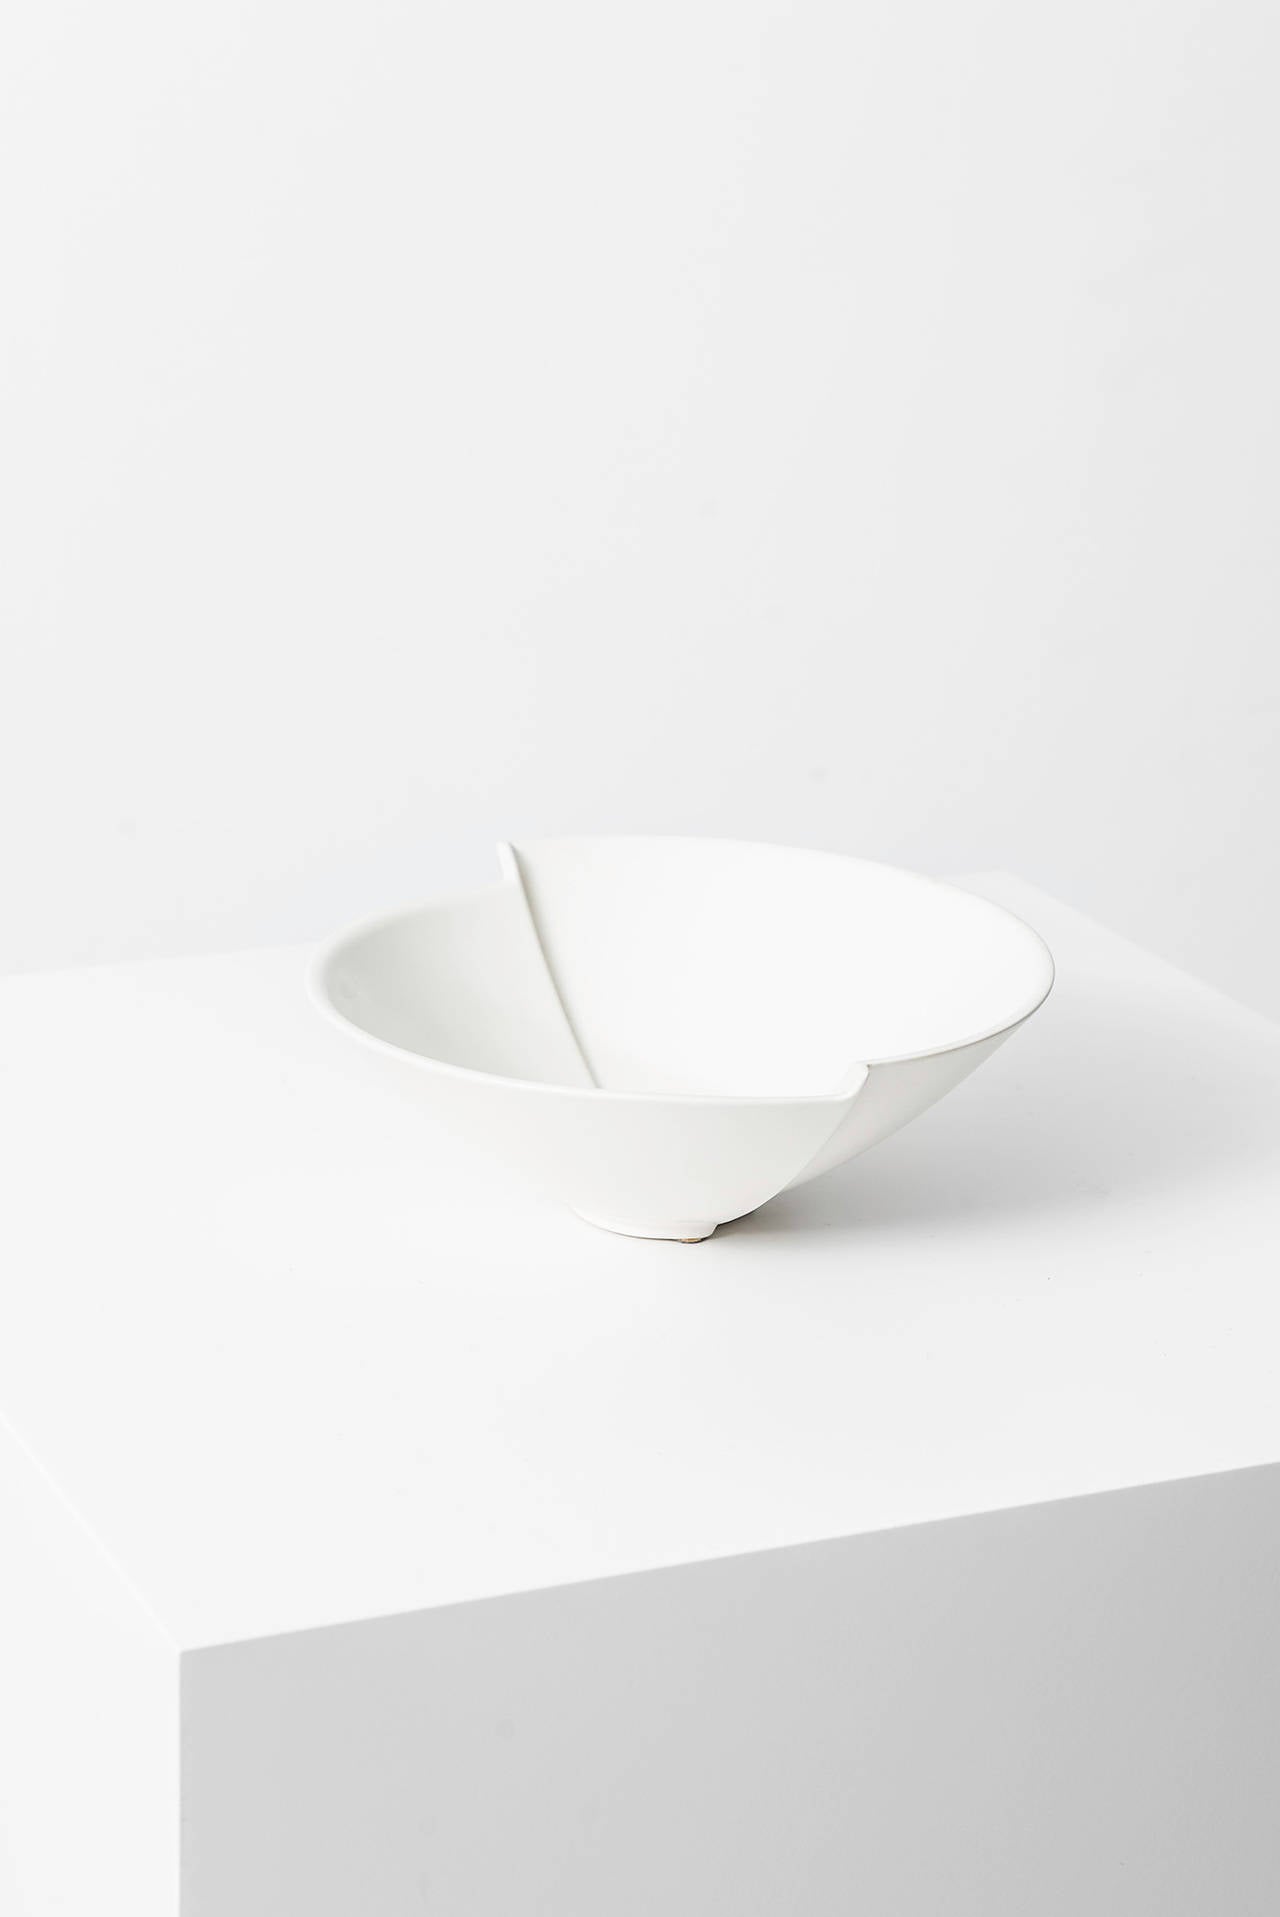 Wilhelm Kåge Ceramic Bowl Model Surrea by Gustavsberg in Sweden In Excellent Condition For Sale In Limhamn, Skåne län